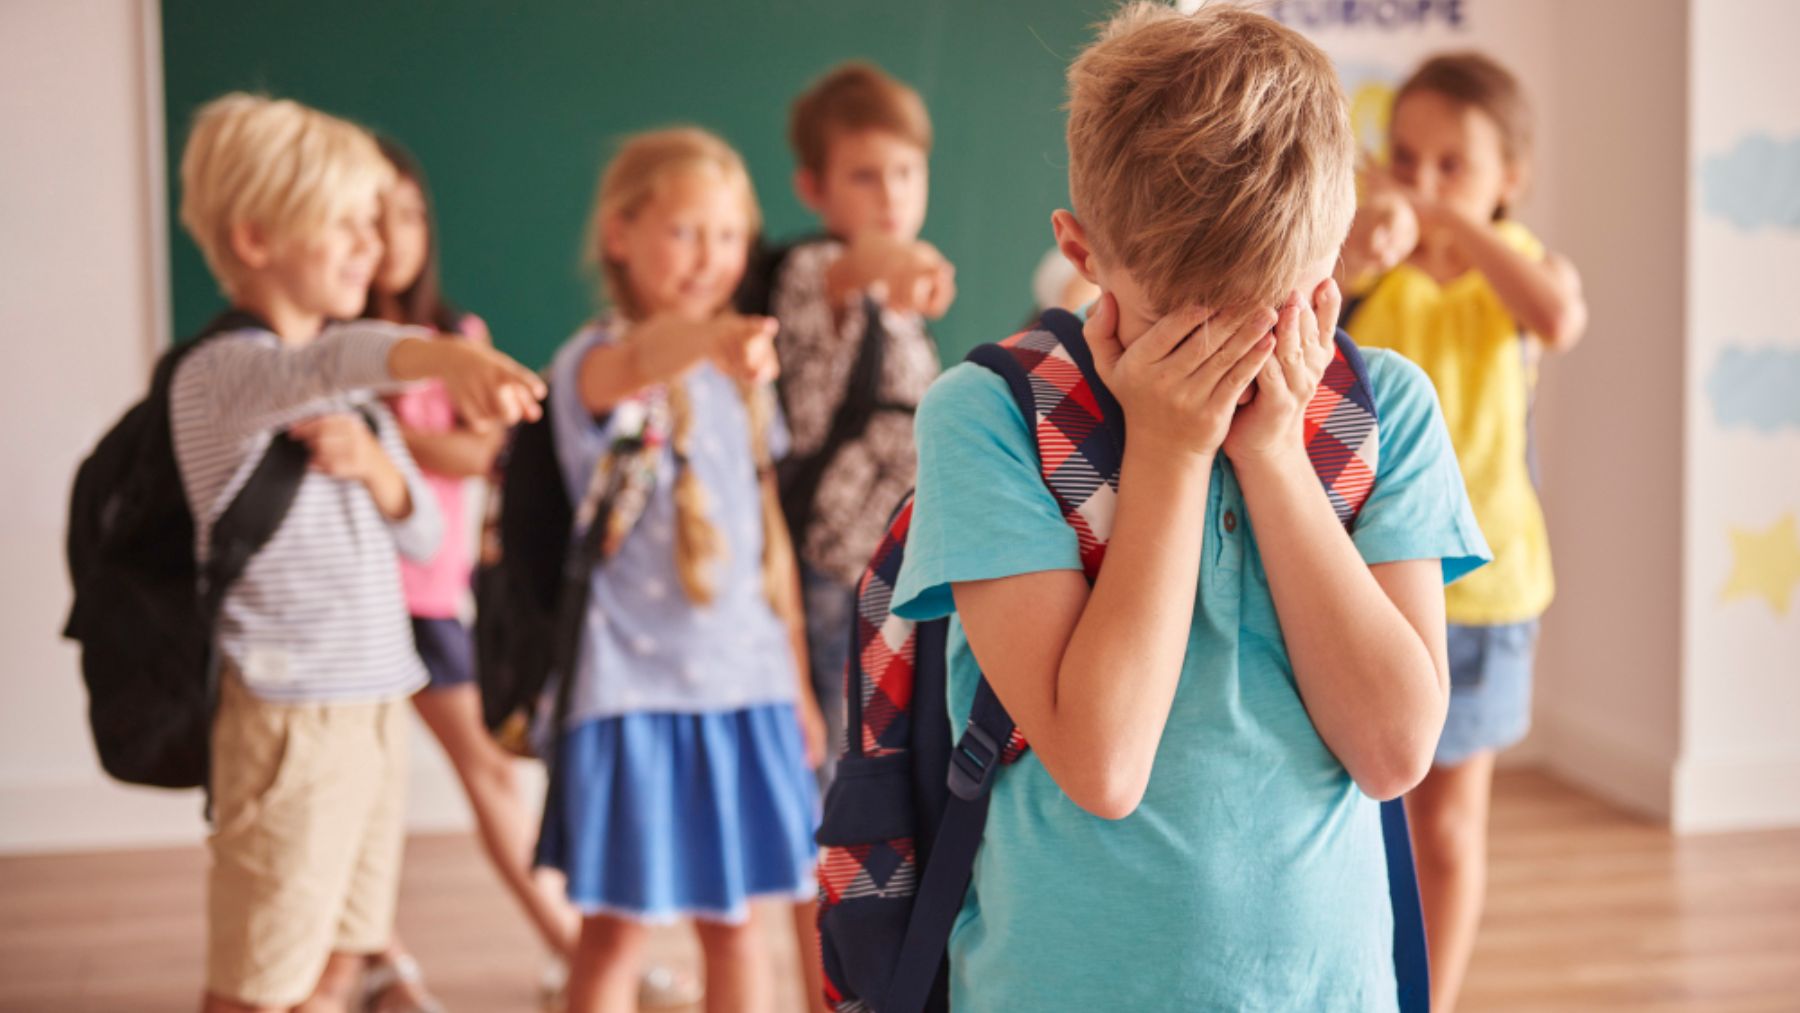 Descubre las señales de alerta ante el acoso escolar